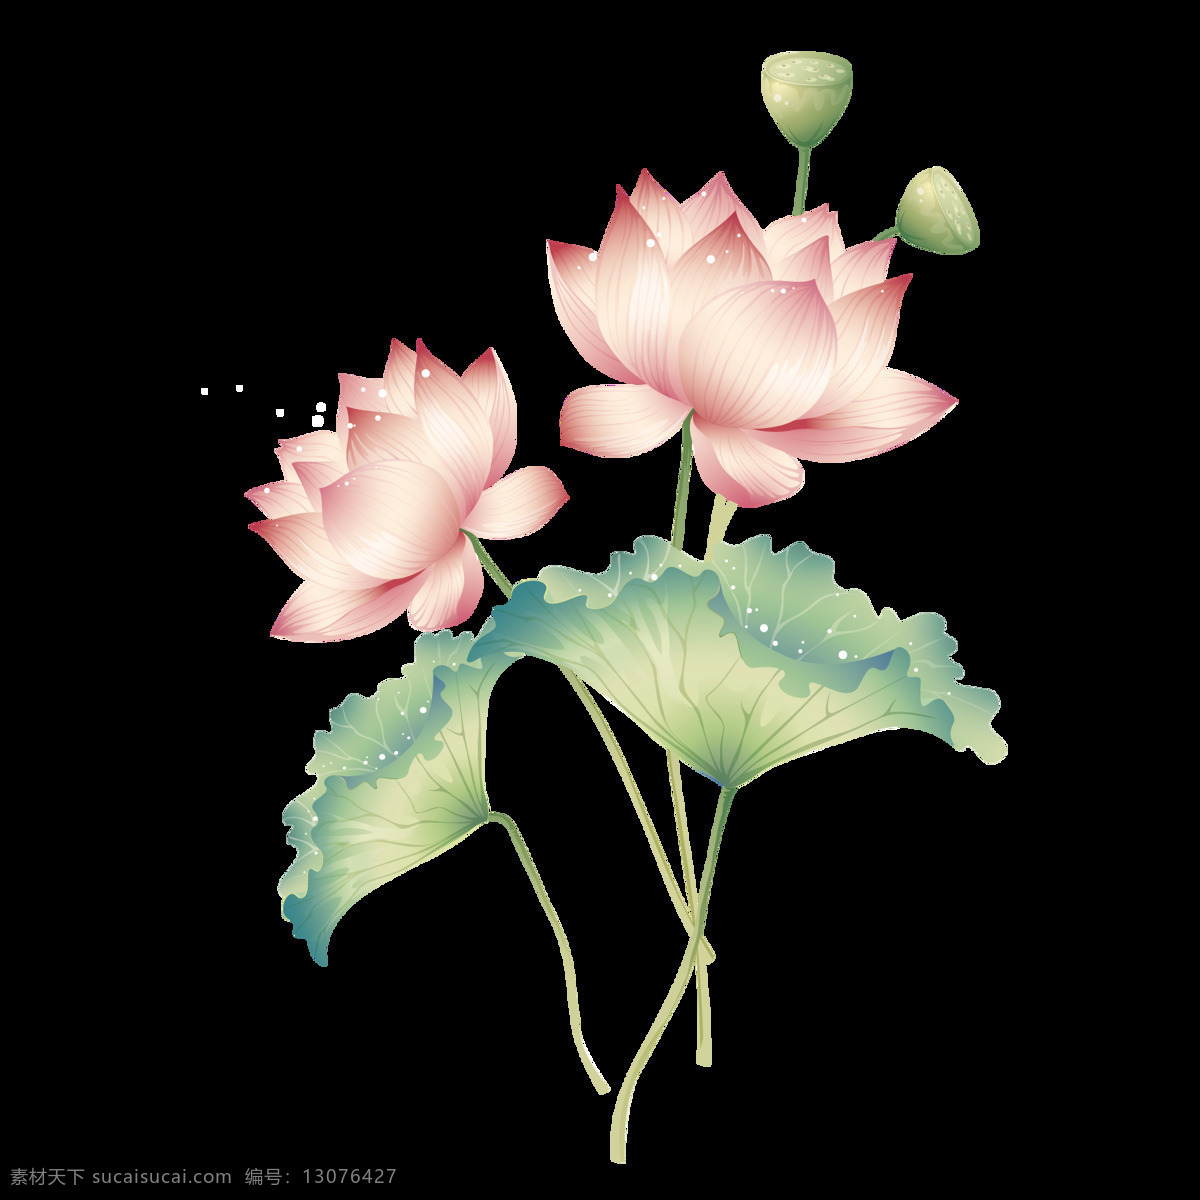 水彩 荷花 图案 元素 创意素材 粉色 古风花卉 荷花元素 花朵 花朵图案 花环图案 花卉元素 花树 莲蓬 时尚图案 手绘荷花 水彩荷花 图案设计